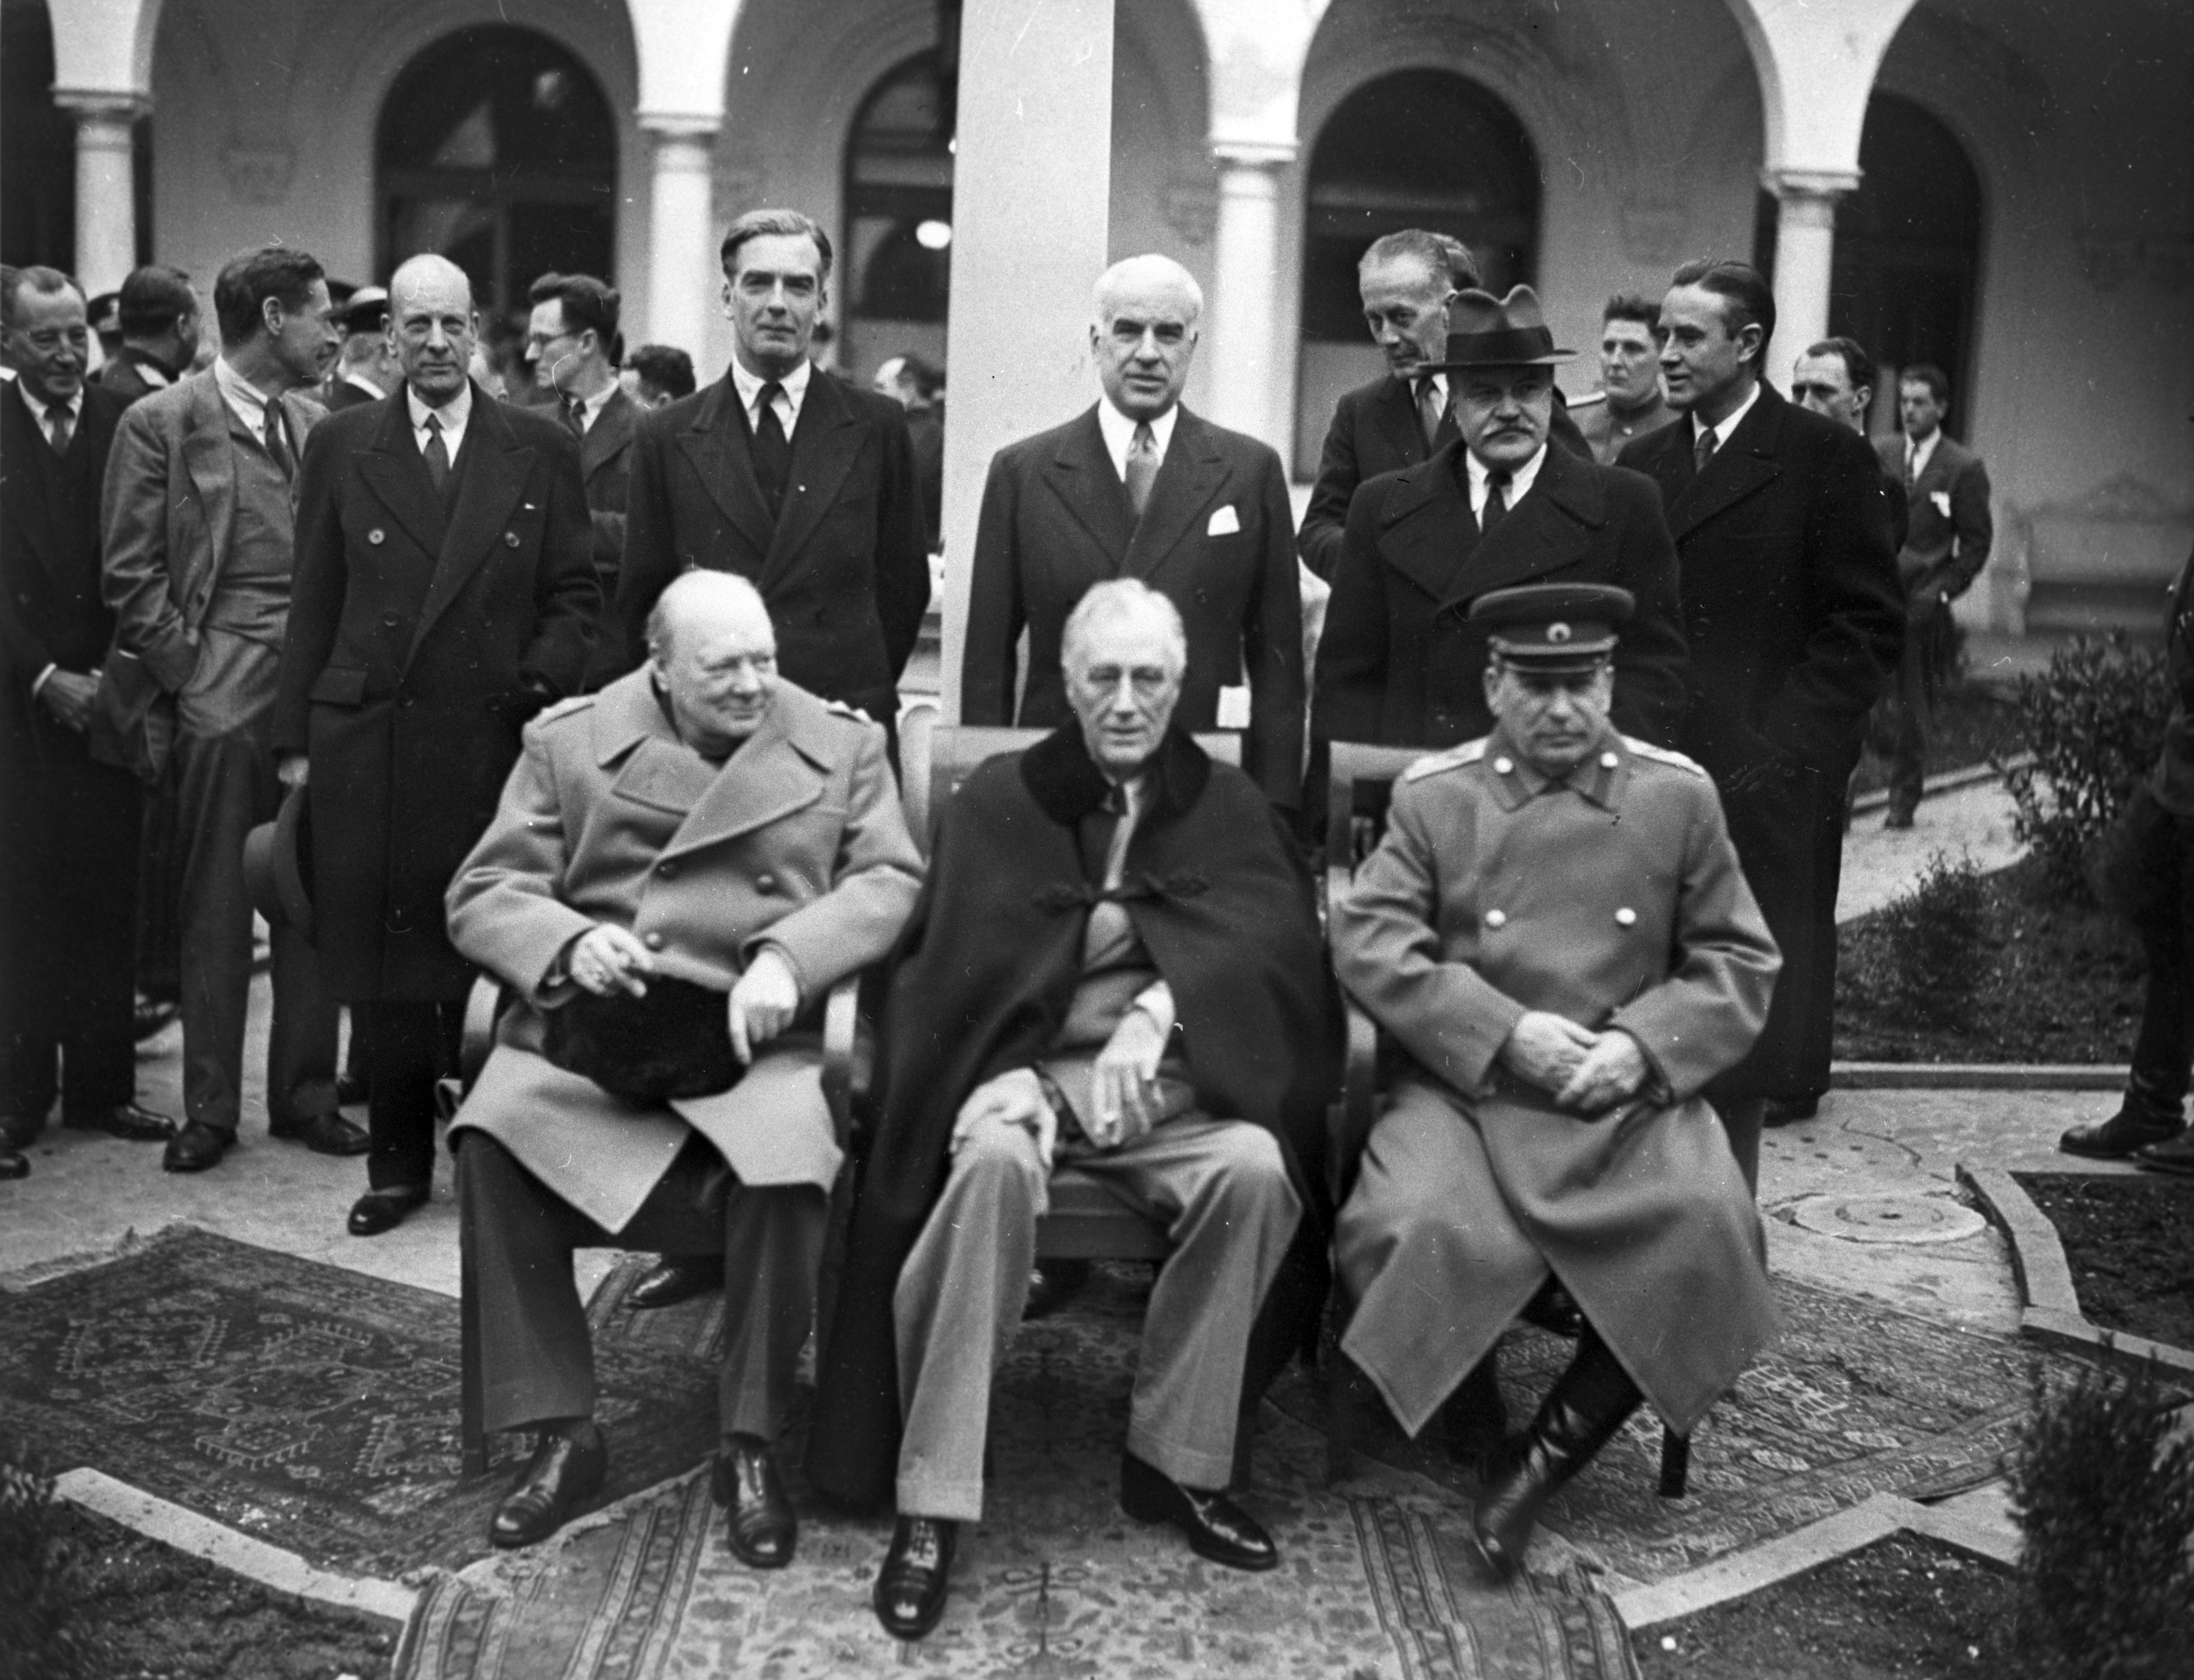 Крымская конференция 1945 участники